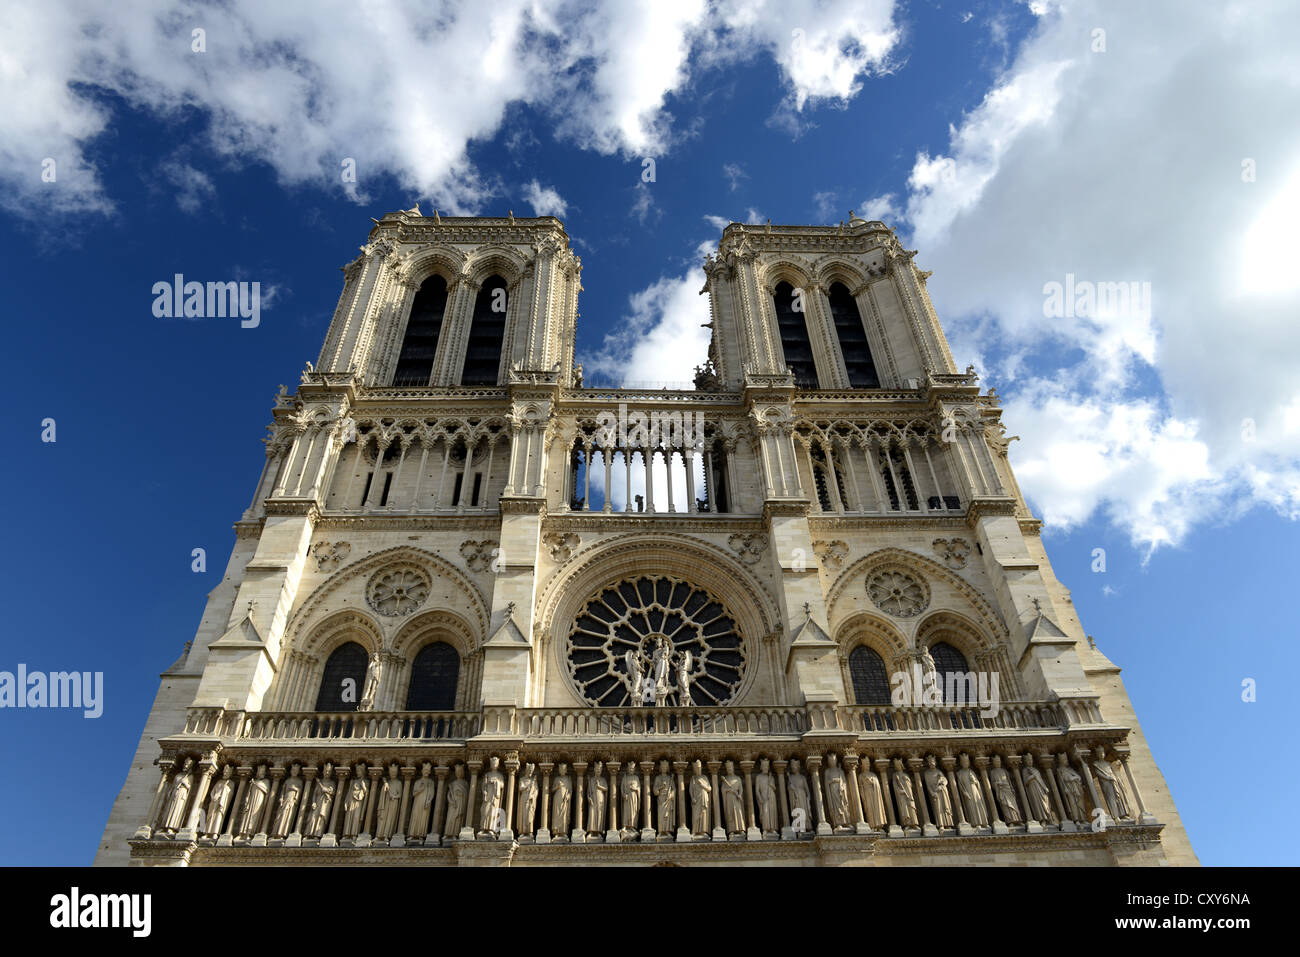 La Cathédrale Notre Dame, Notre Dame de Paris, France Banque D'Images